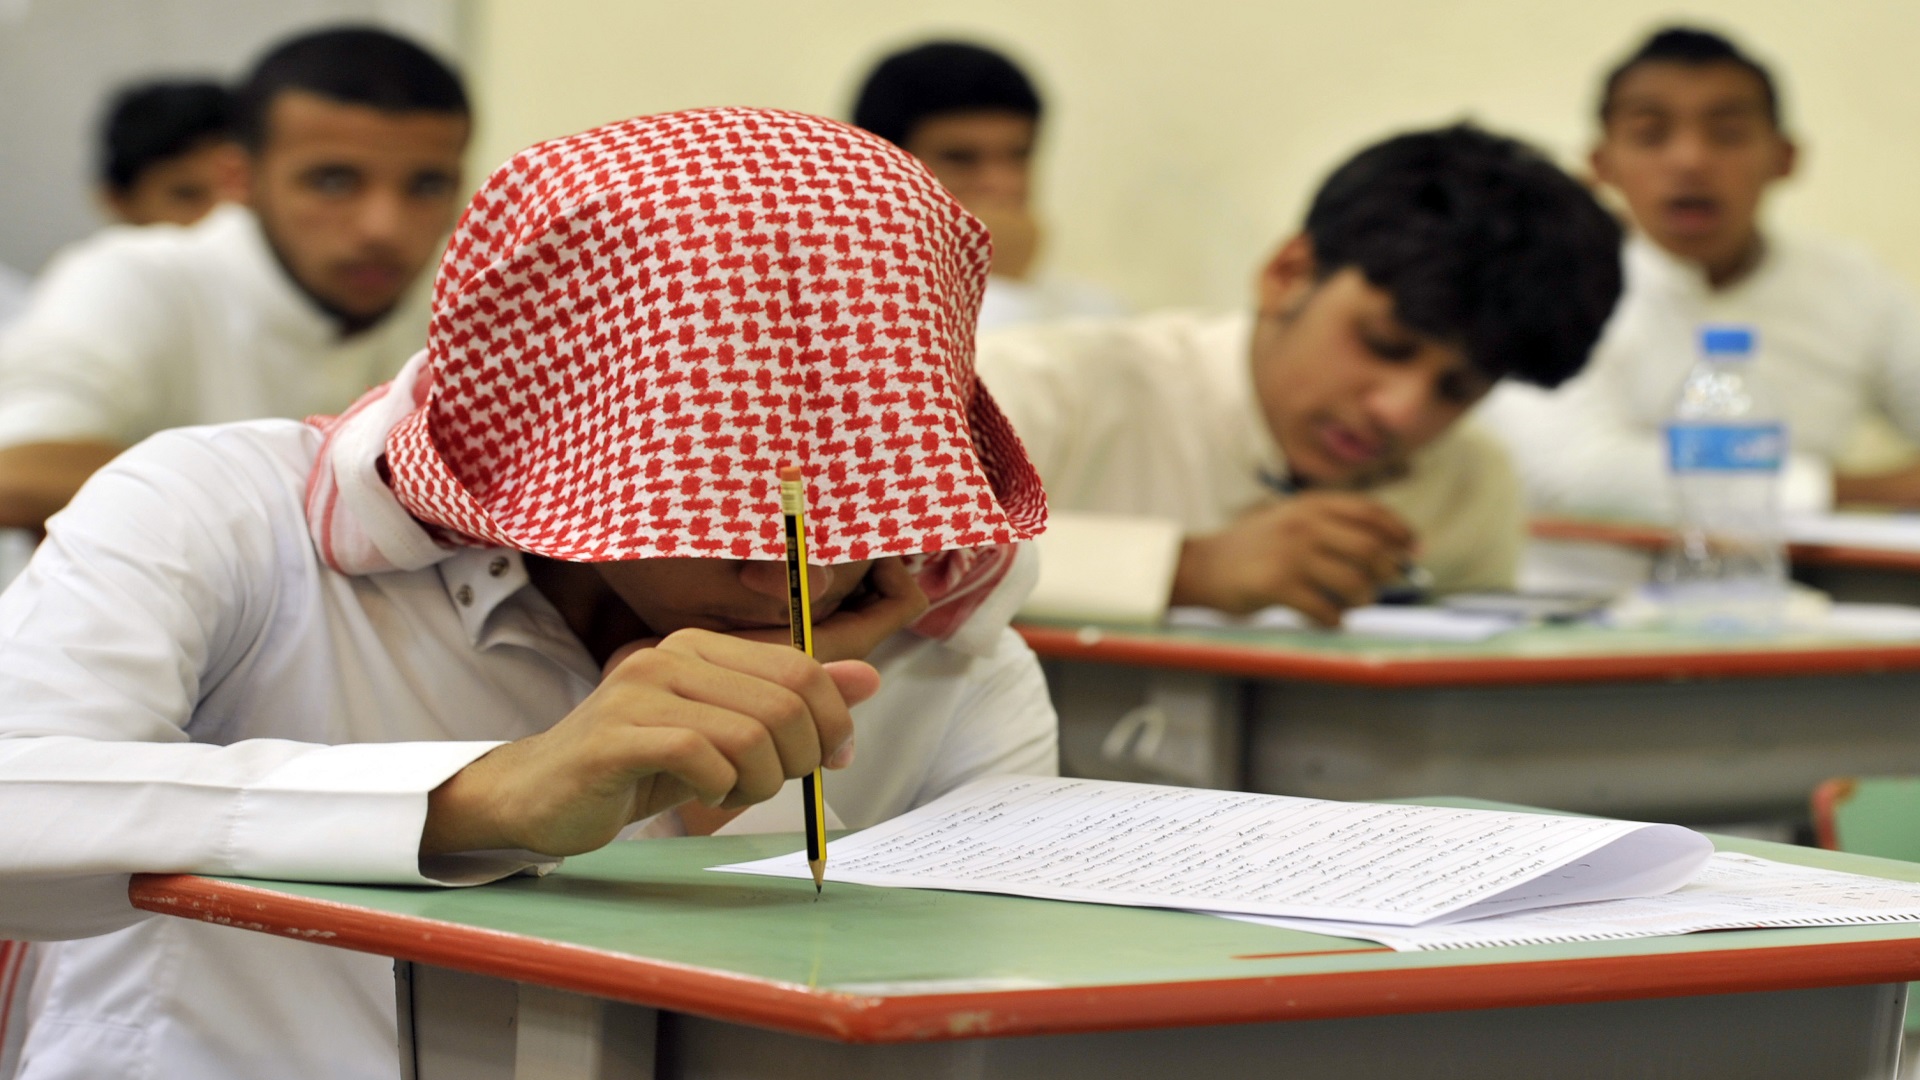 التعليم في السعودية تعديل للمناهج وحملة واسعة لإقصاء مدرسين